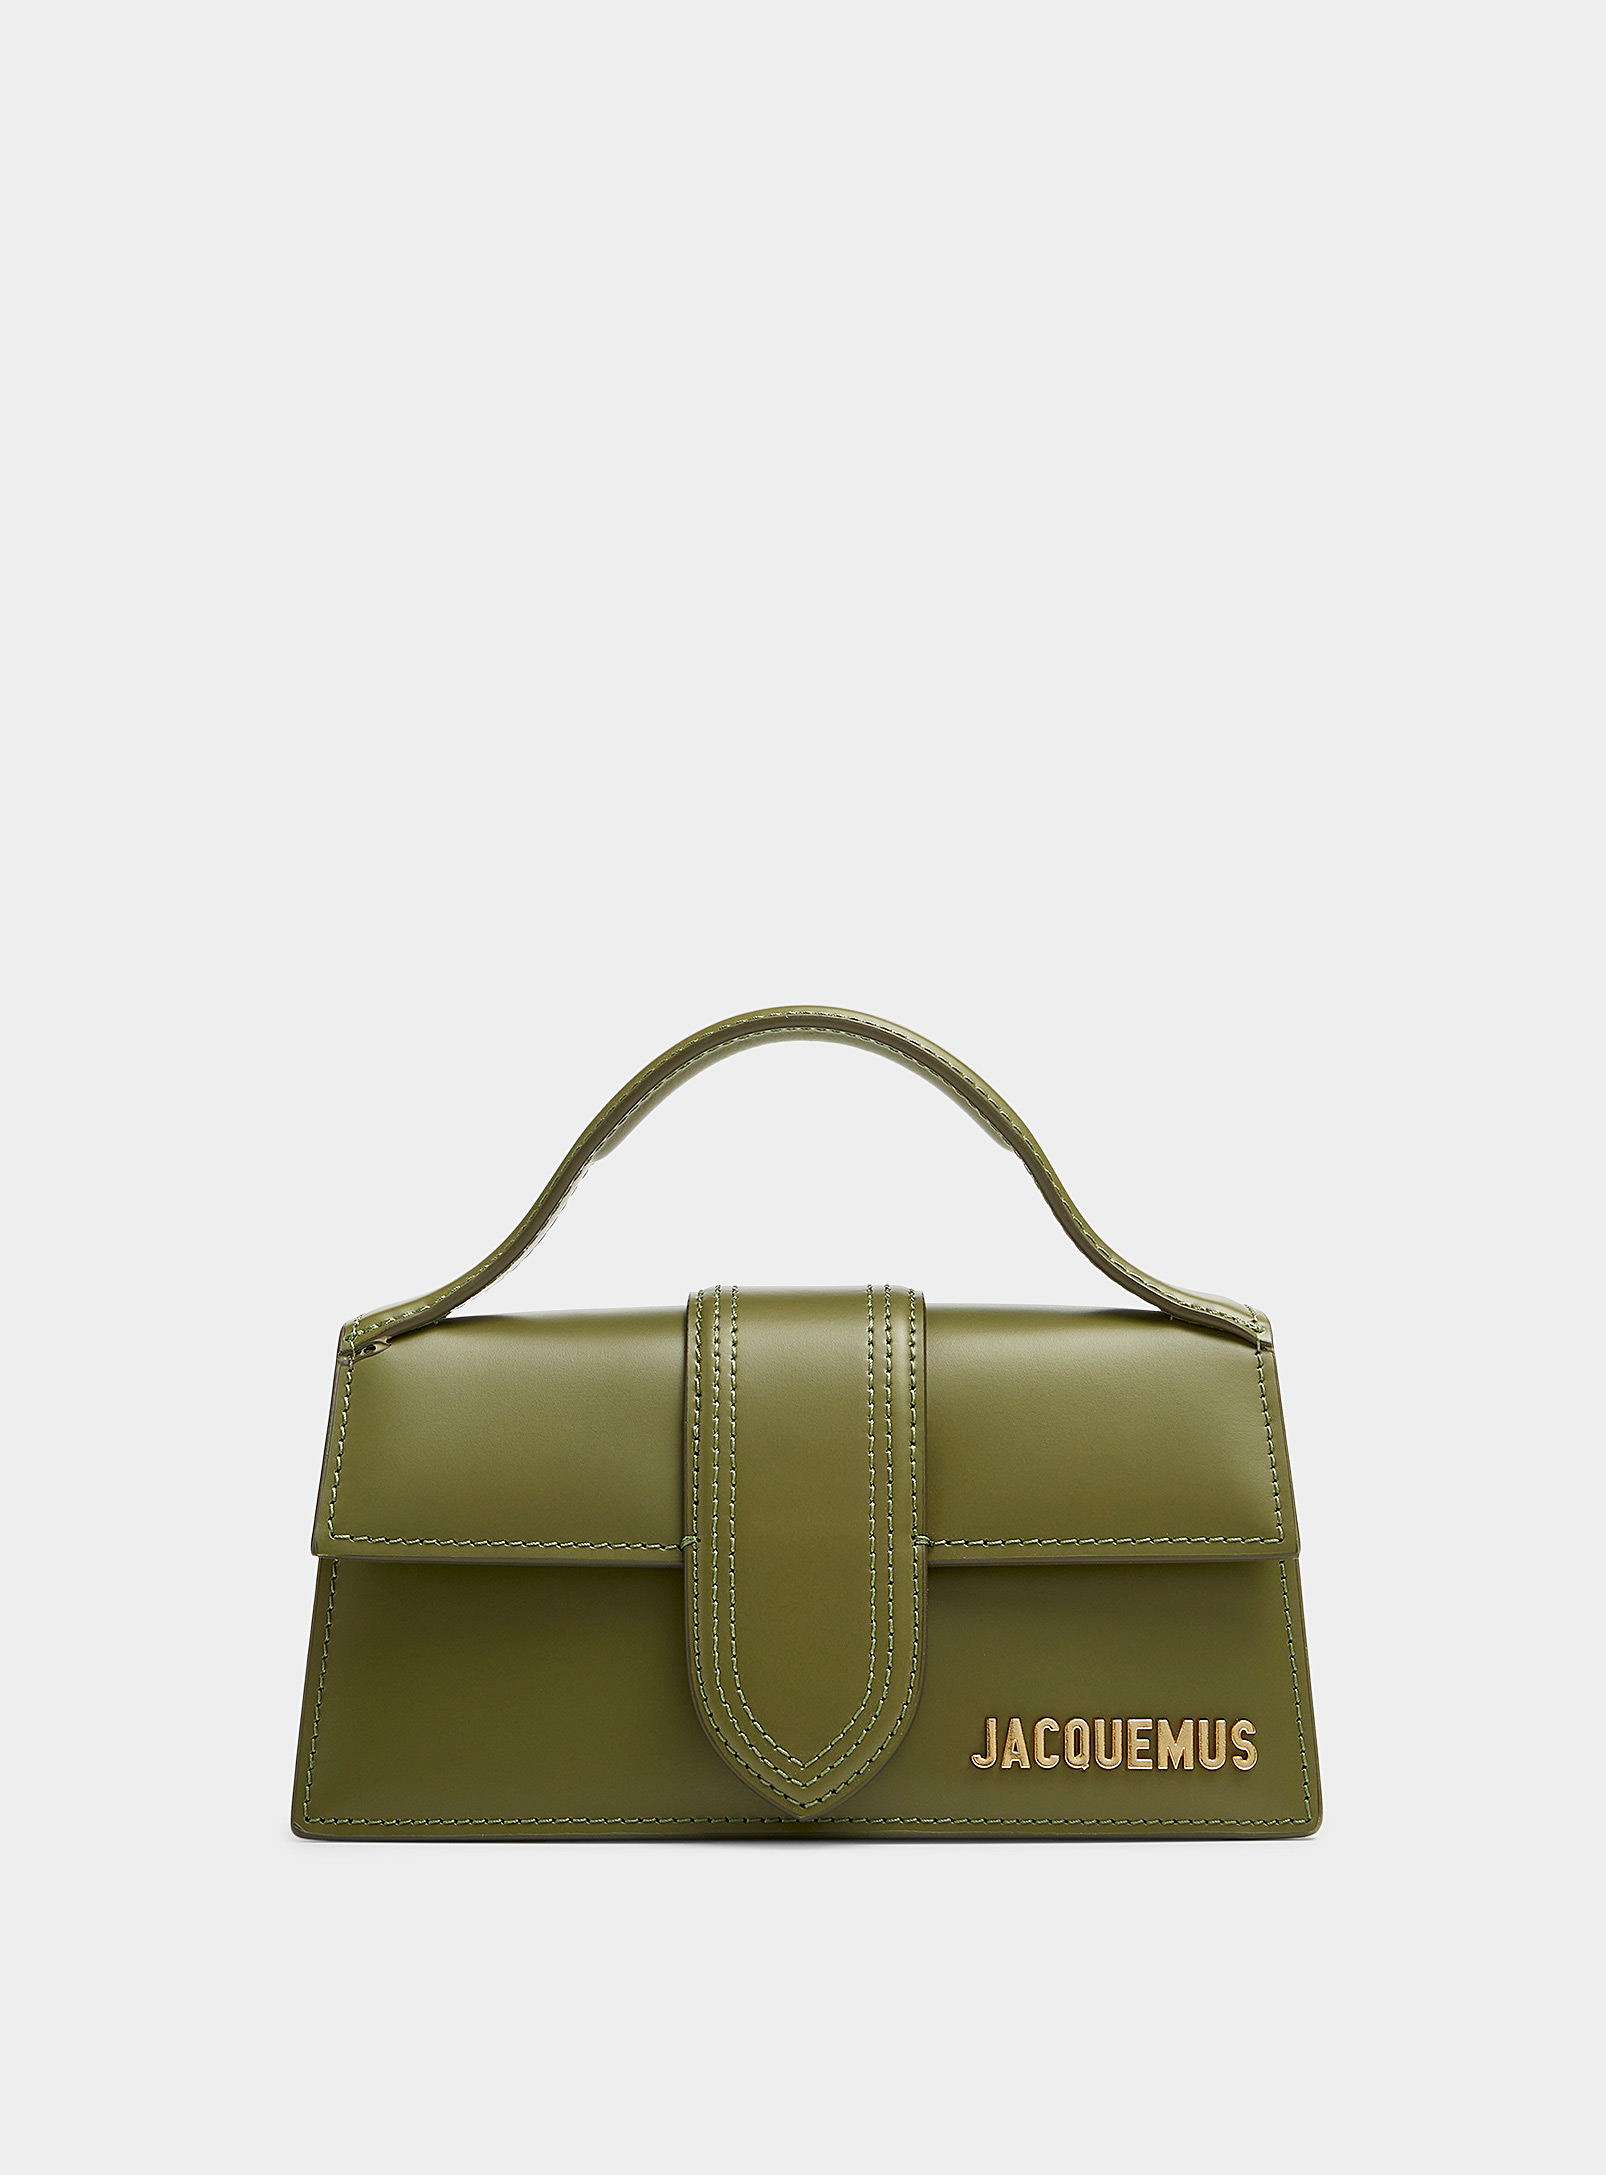 Jacquemus - Women's Bambinou bag